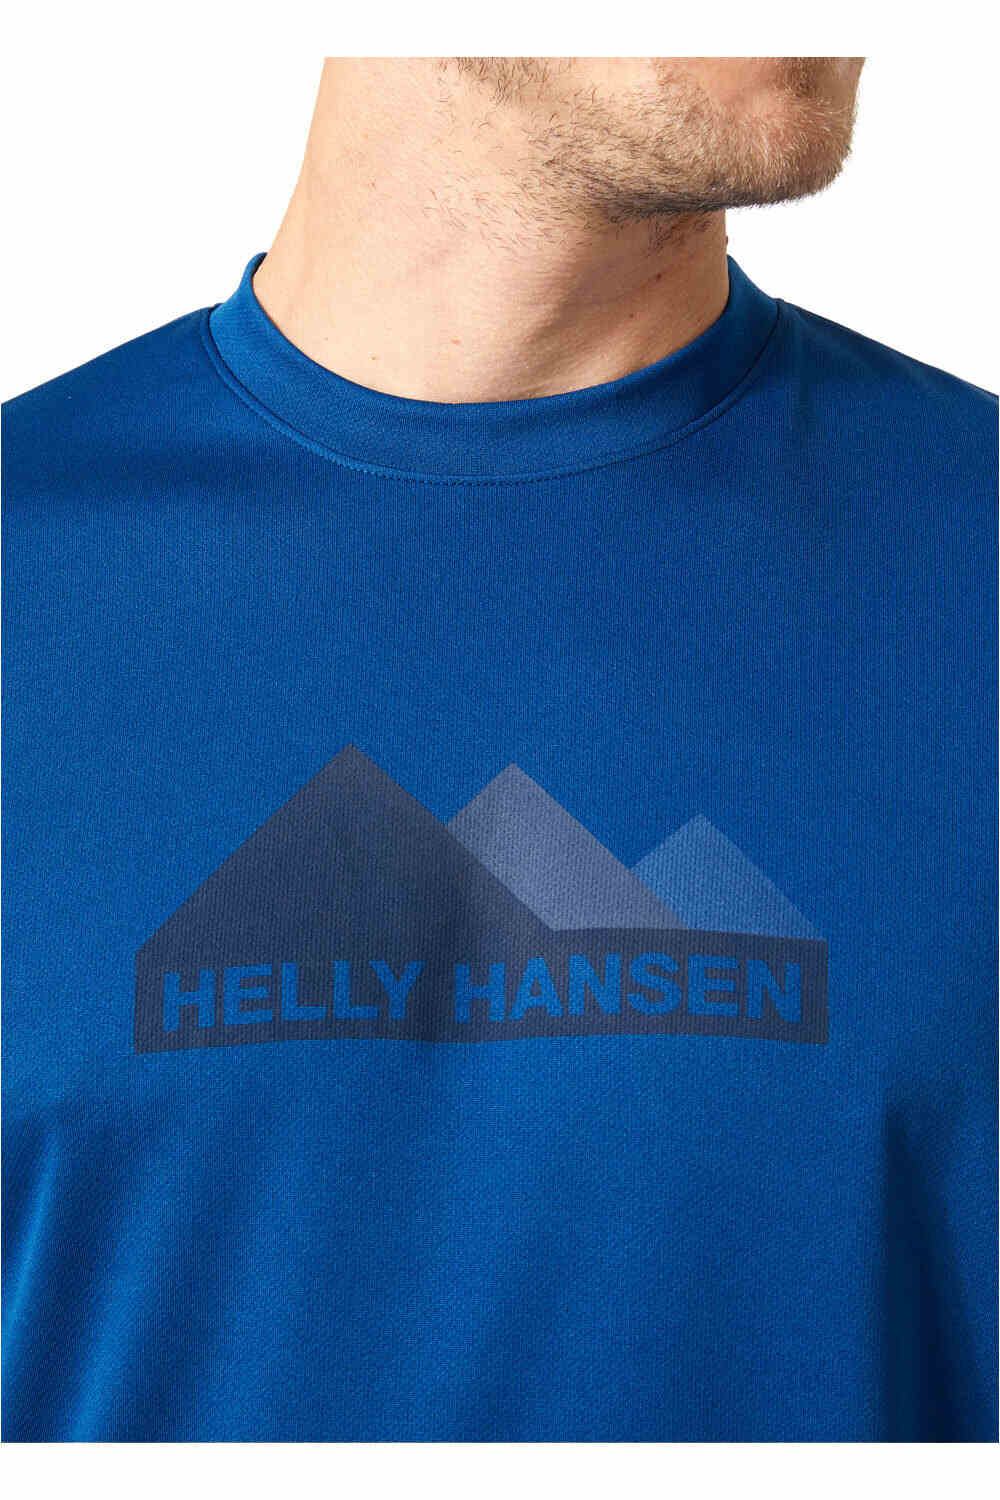 Helly Hansen camiseta montaña manga corta hombre HH TECH GRAPHIC T-SHIRT vista detalle